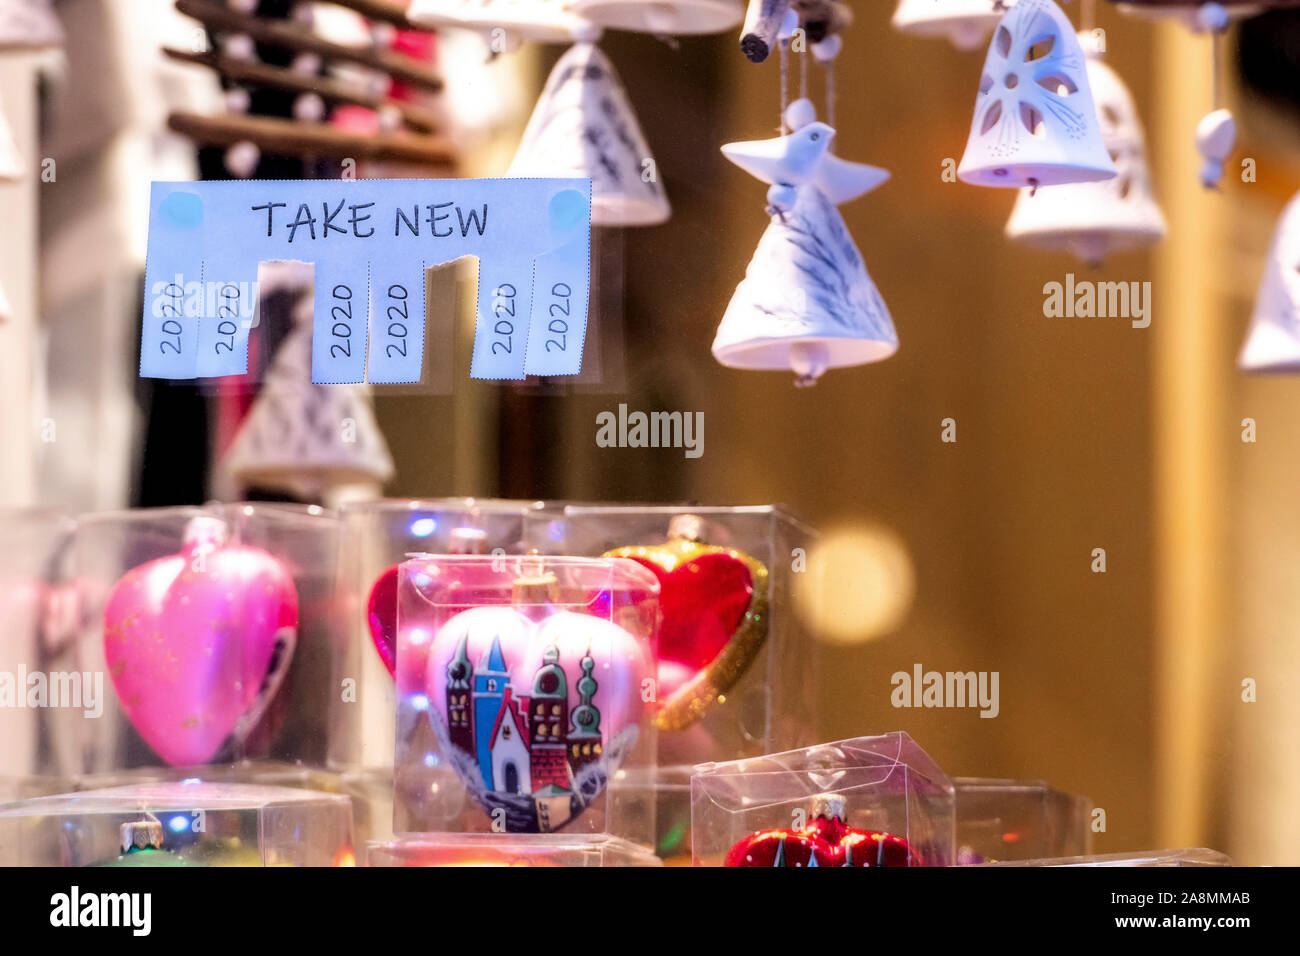 Weihnachten shop Fenster mit Papier mit der Phrase: Neue nehmen und mit 2020 Zeichen bereit, abgerissen werden - Bild Stockfoto